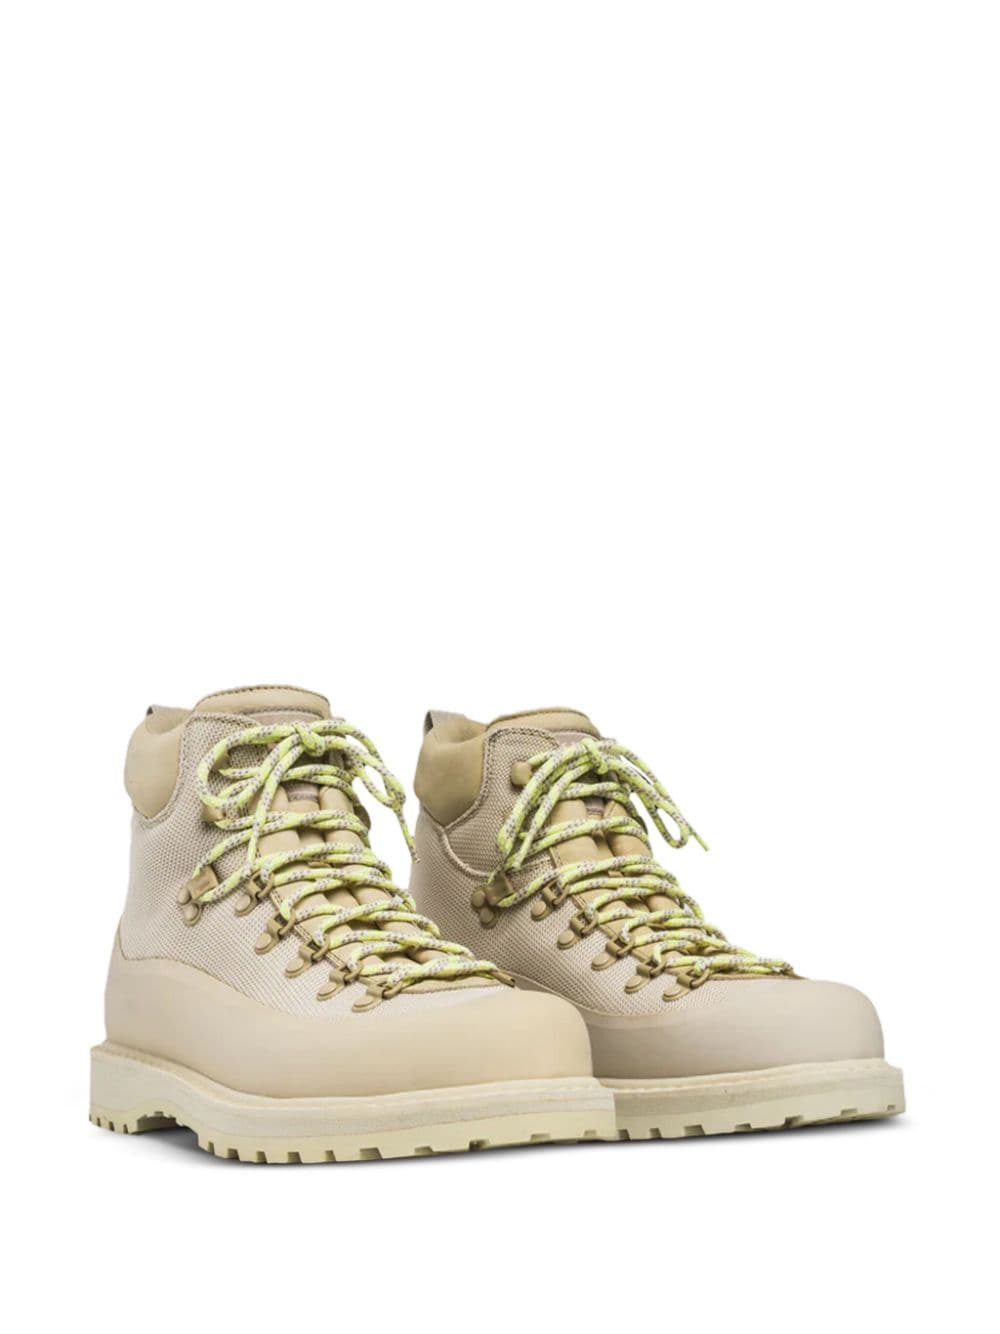 Diemme Roccia Vet leather hiking boots - Beige